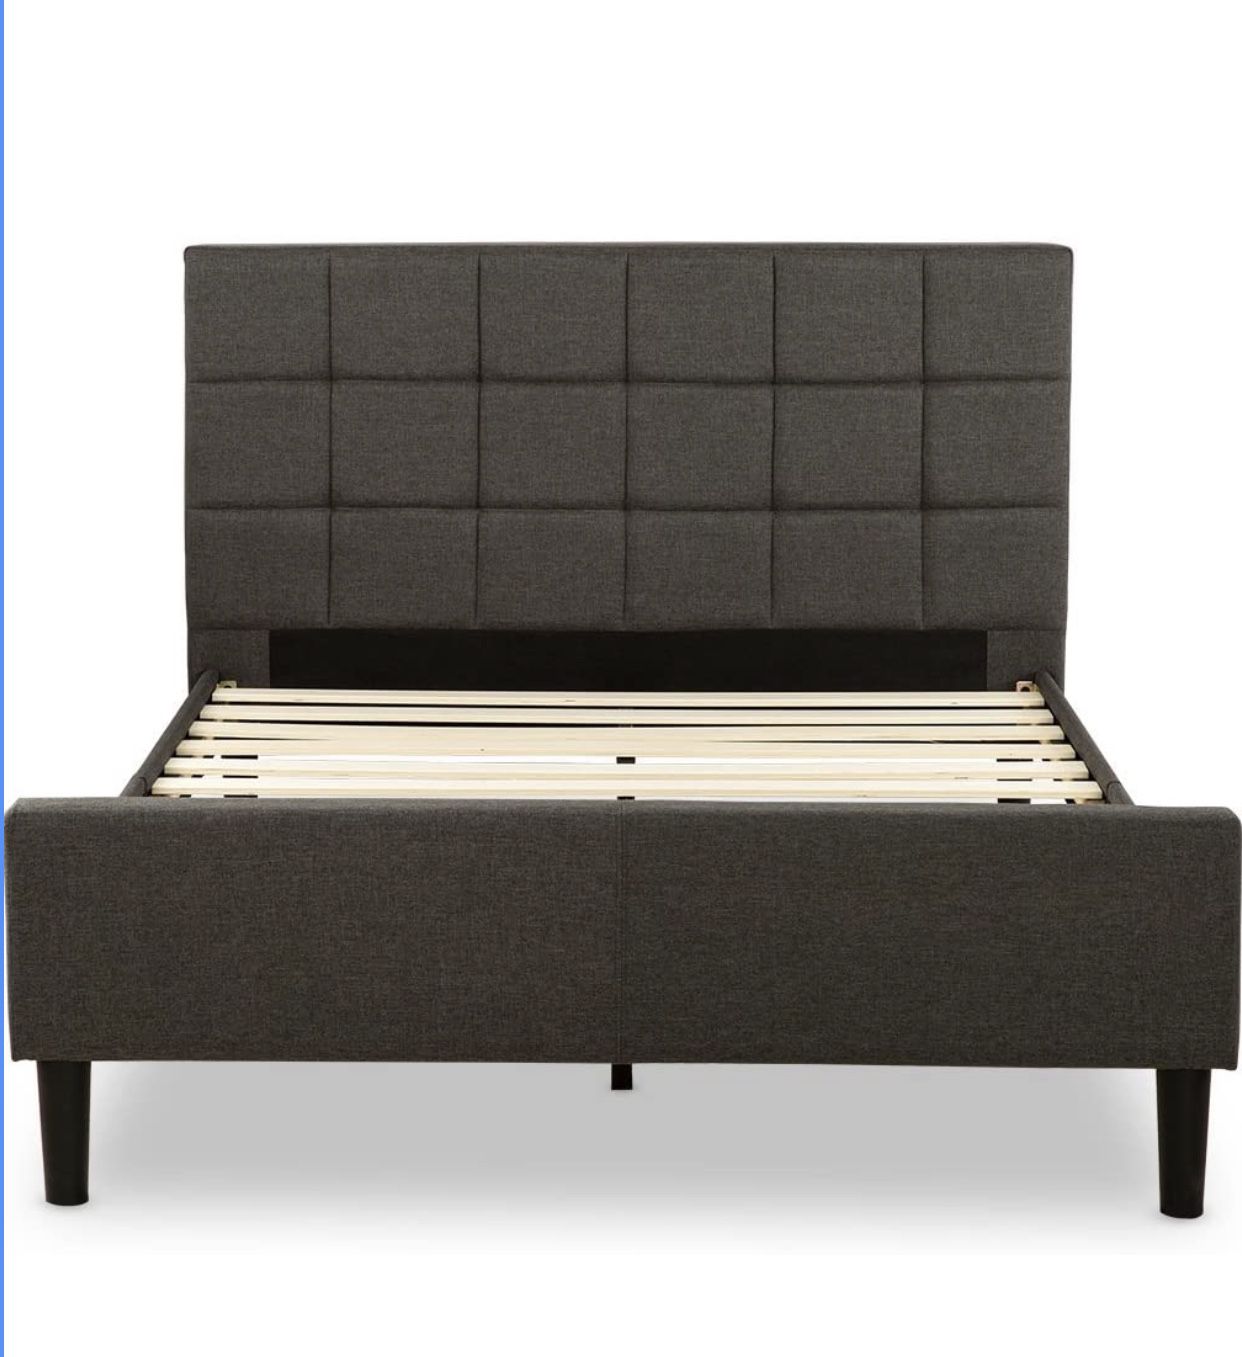 Zinus Lottie Upholstered Platform Grey Bed Frame with Footboard | FSPBF-F Model | Full